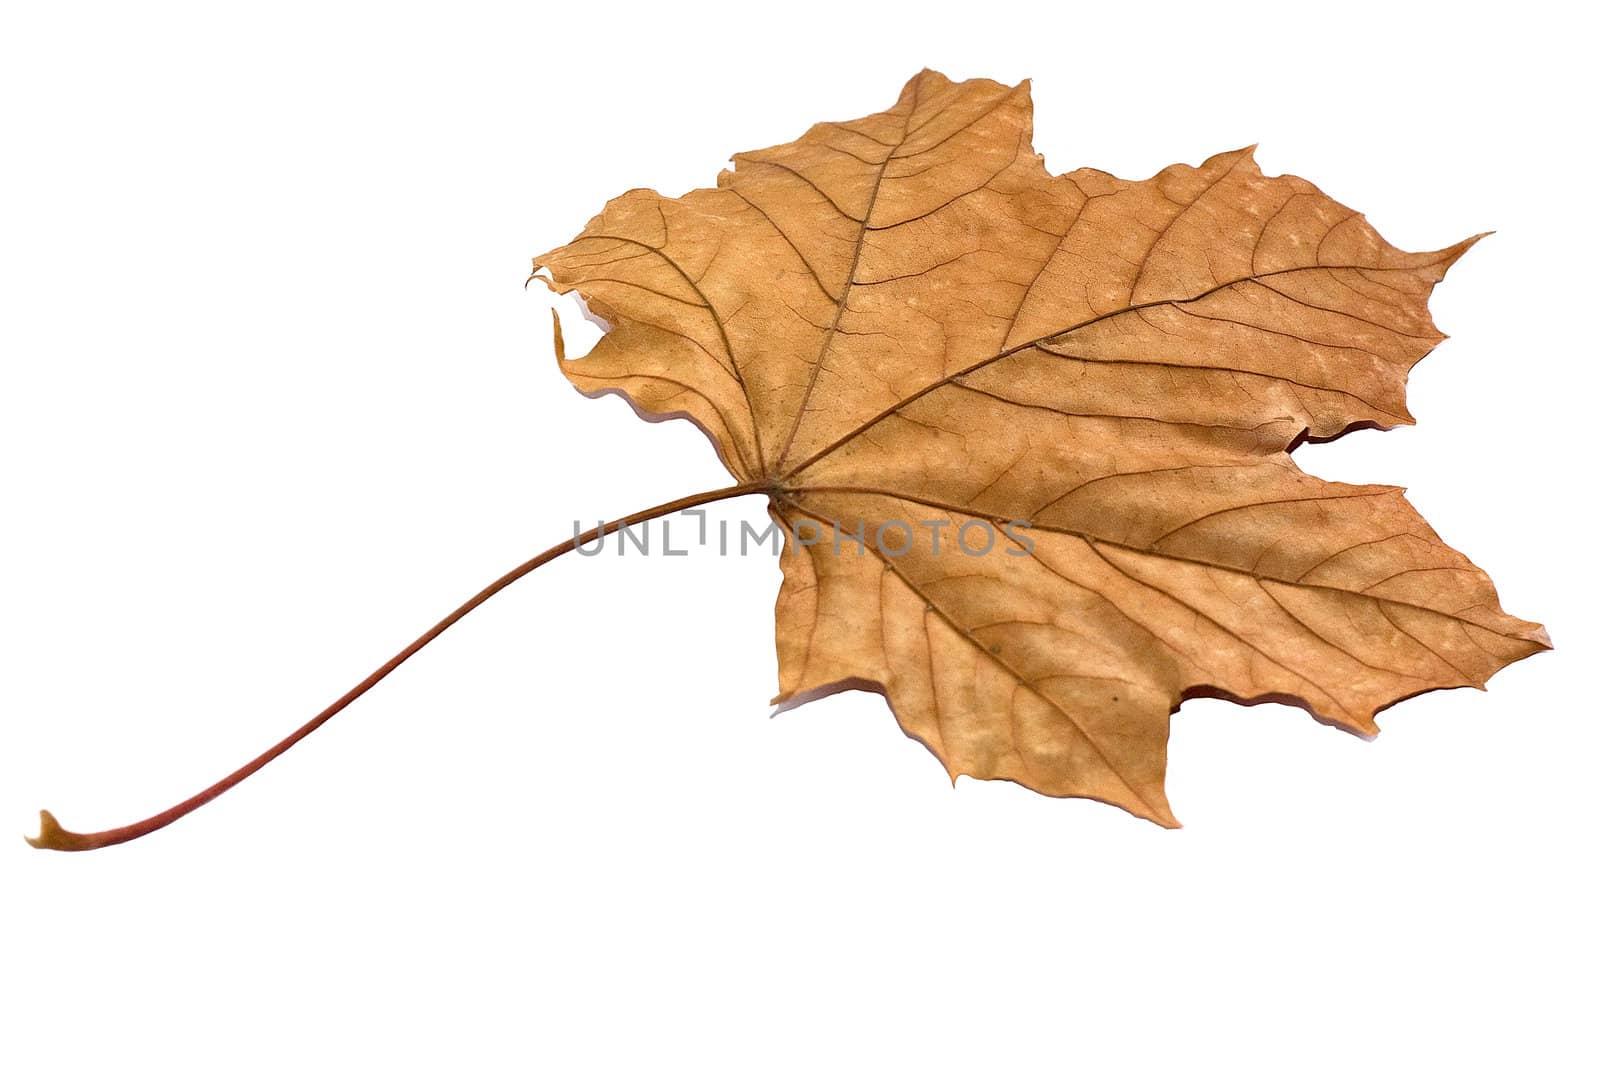 Golden Dry Leaf by Brigida_Soriano